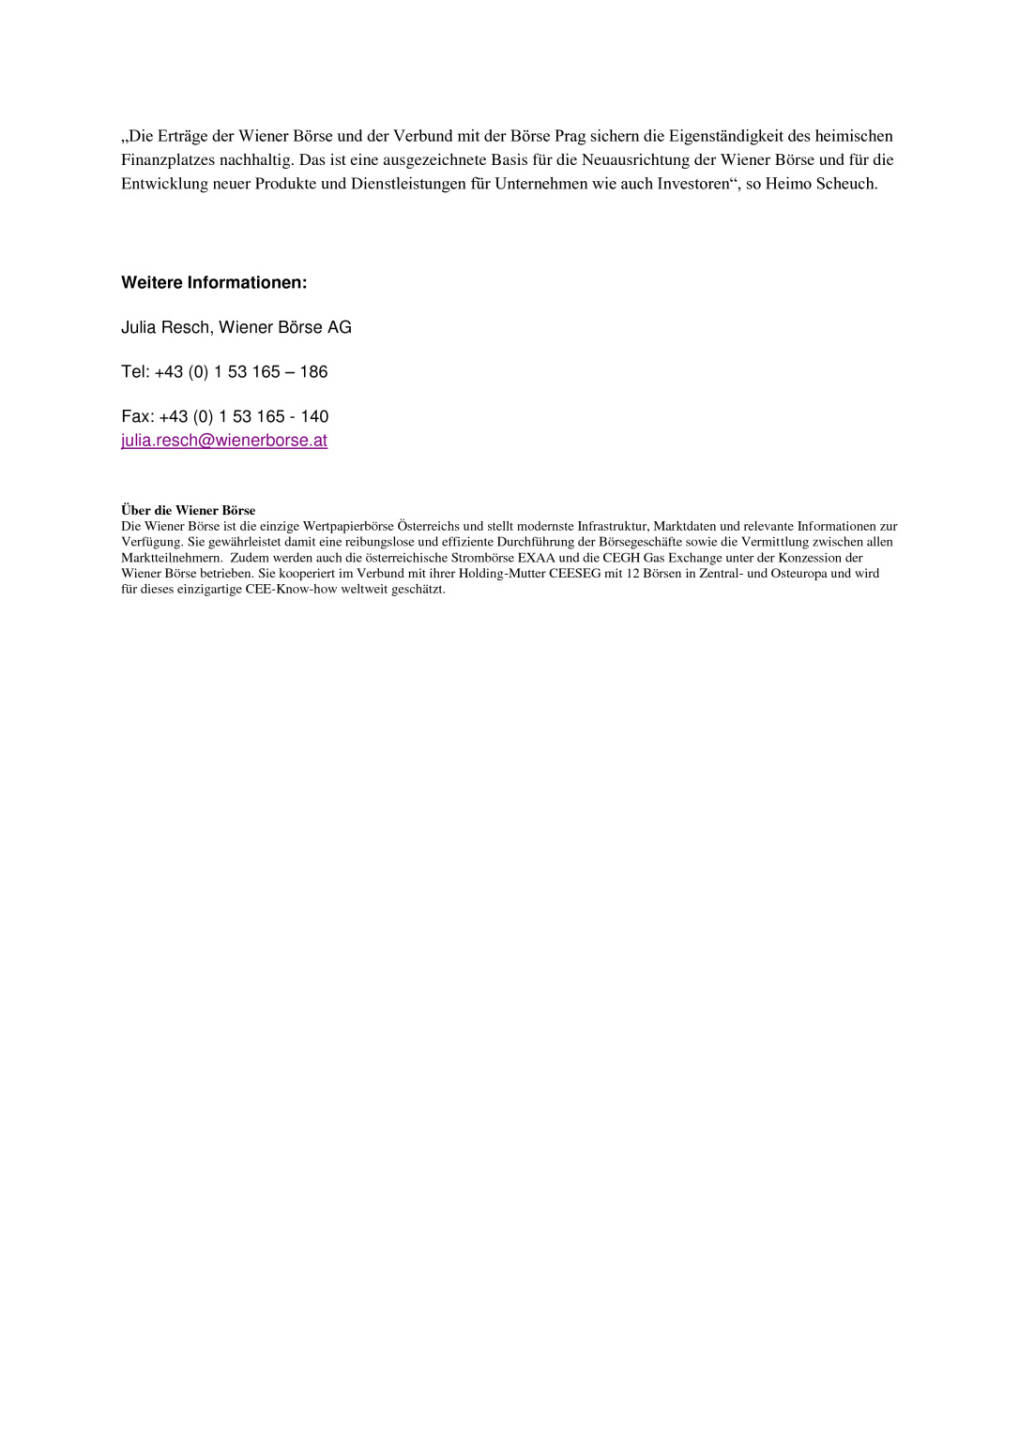 Neuaufstellung des Aufsichtsrates der Wiener Börse AG und CEESEG AG, Seite 2/2, komplettes Dokument unter http://boerse-social.com/static/uploads/file_1214_neuaufstellung_des_aufsichtsrates_der_wiener_borse_ag_und_ceeseg_ag.pdf